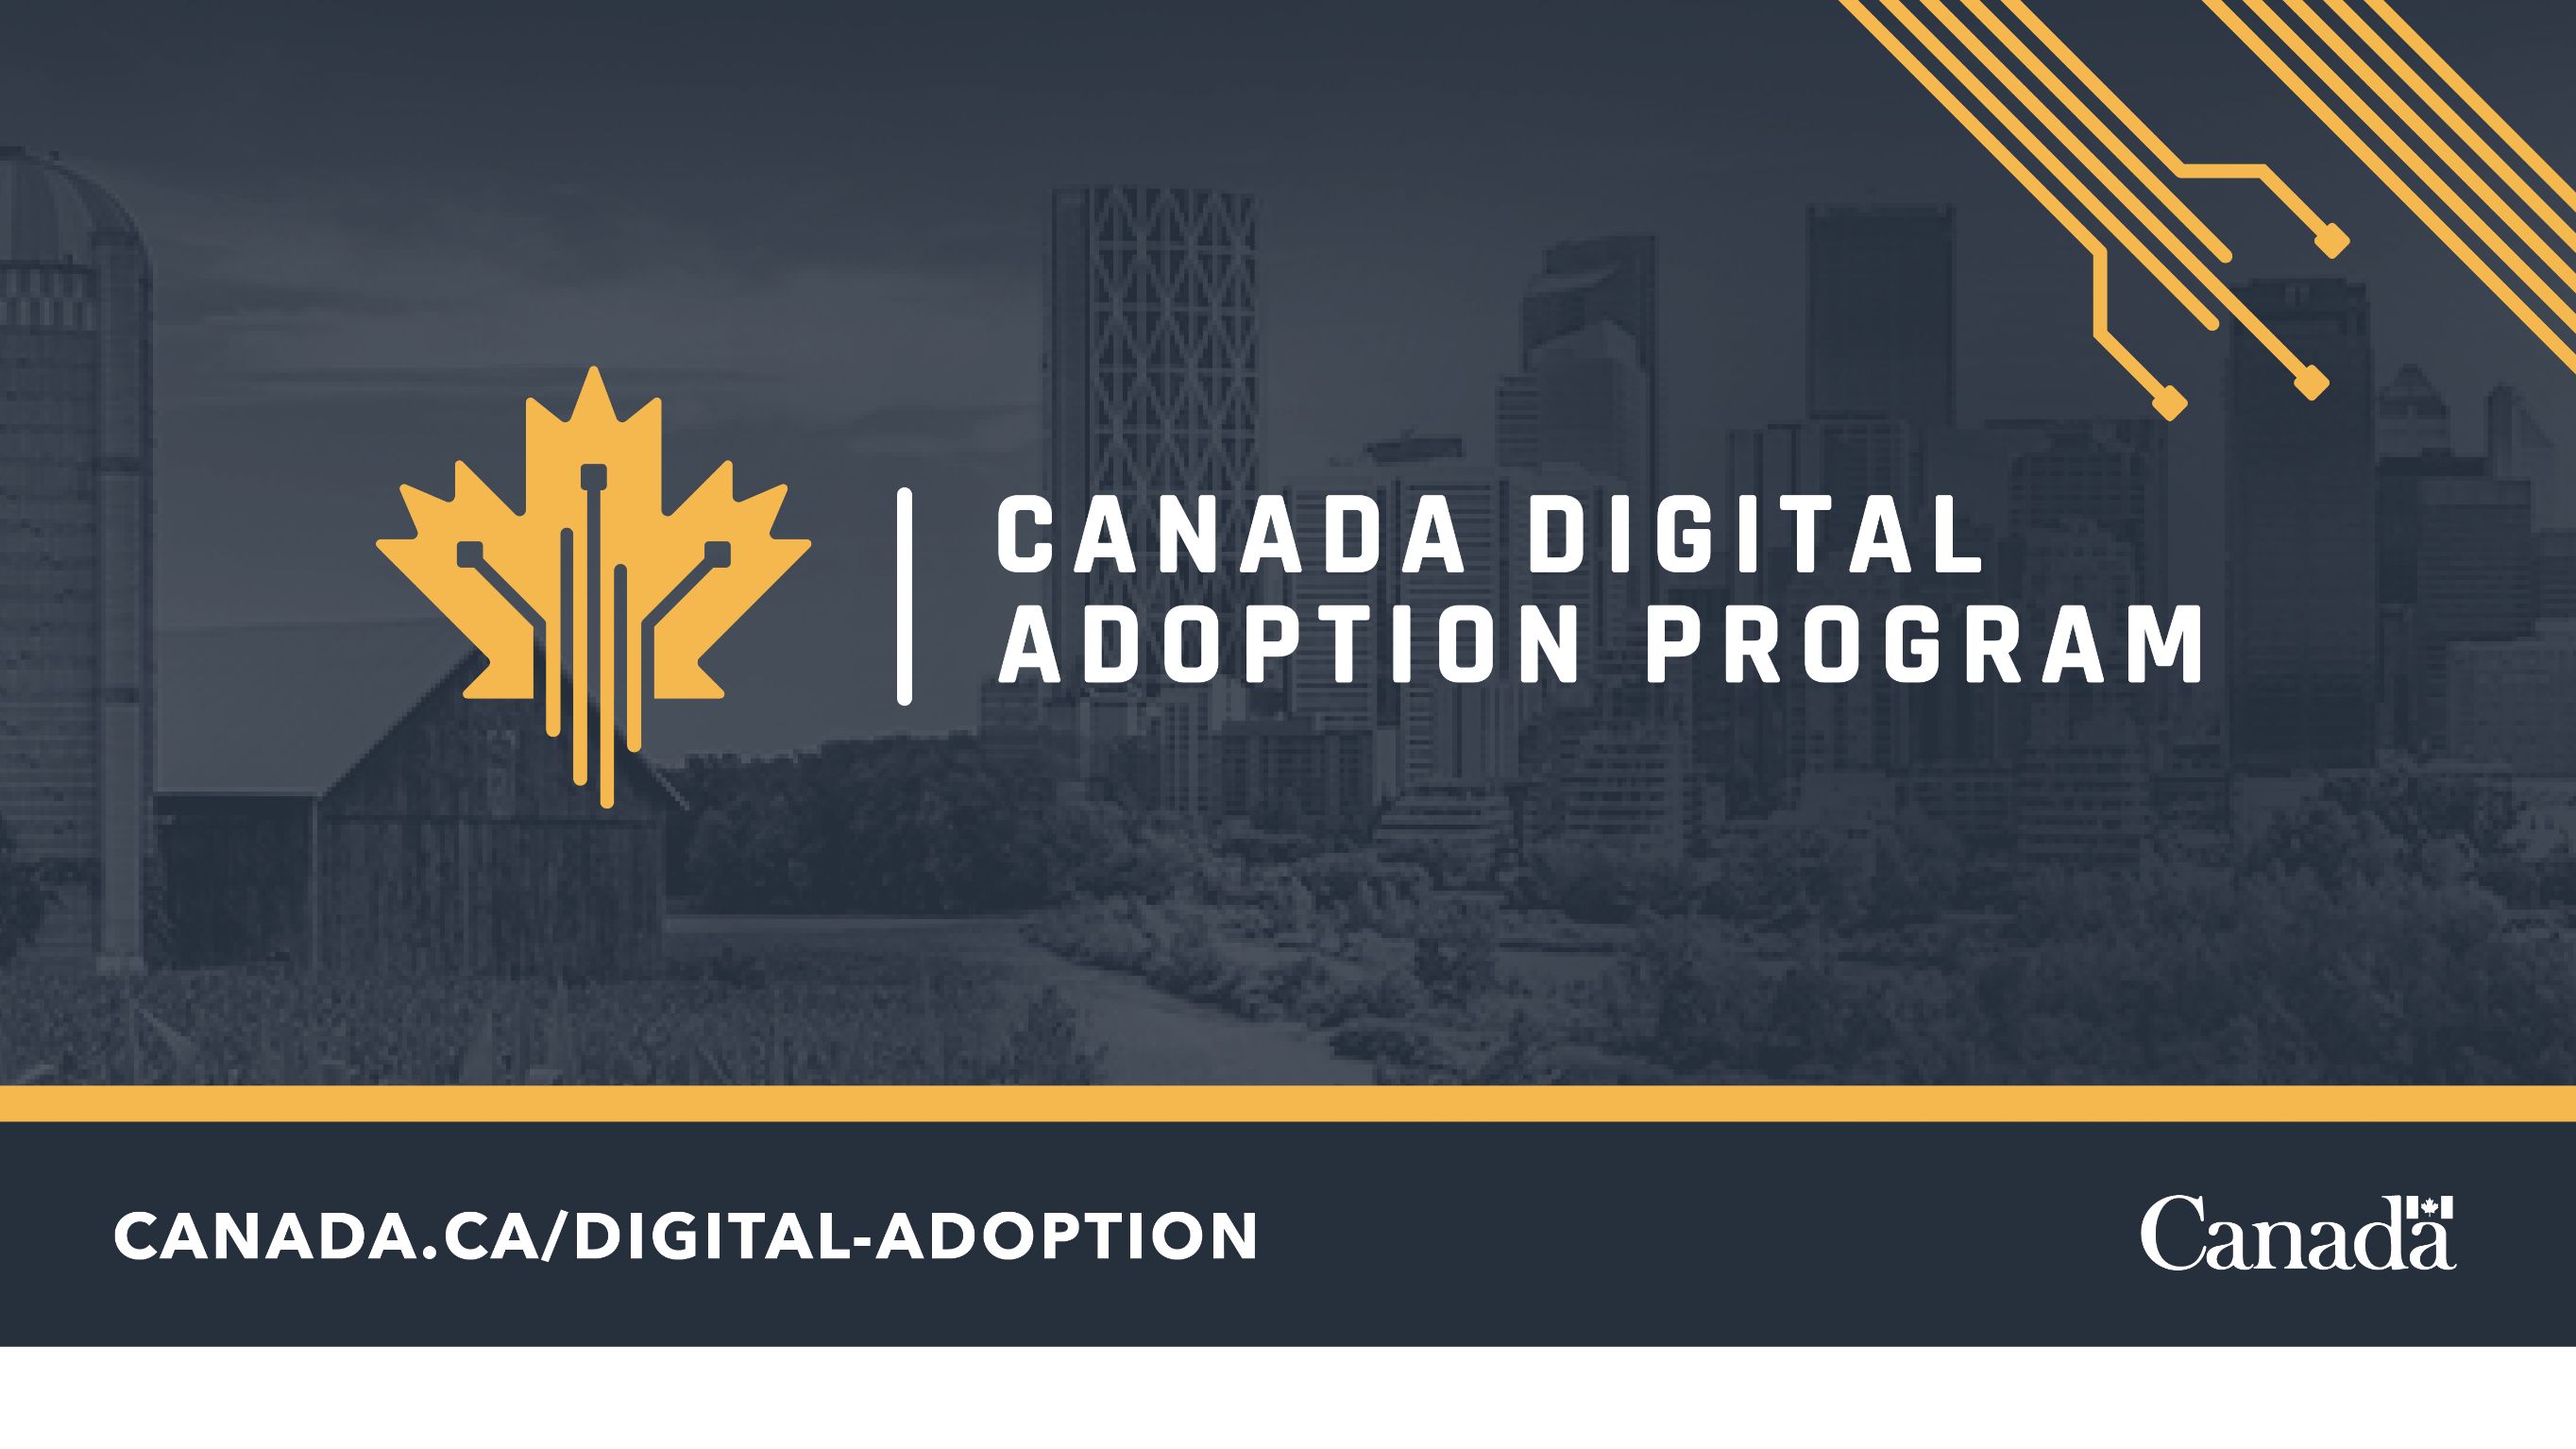 CDAP: Canada Digital Adoption Program